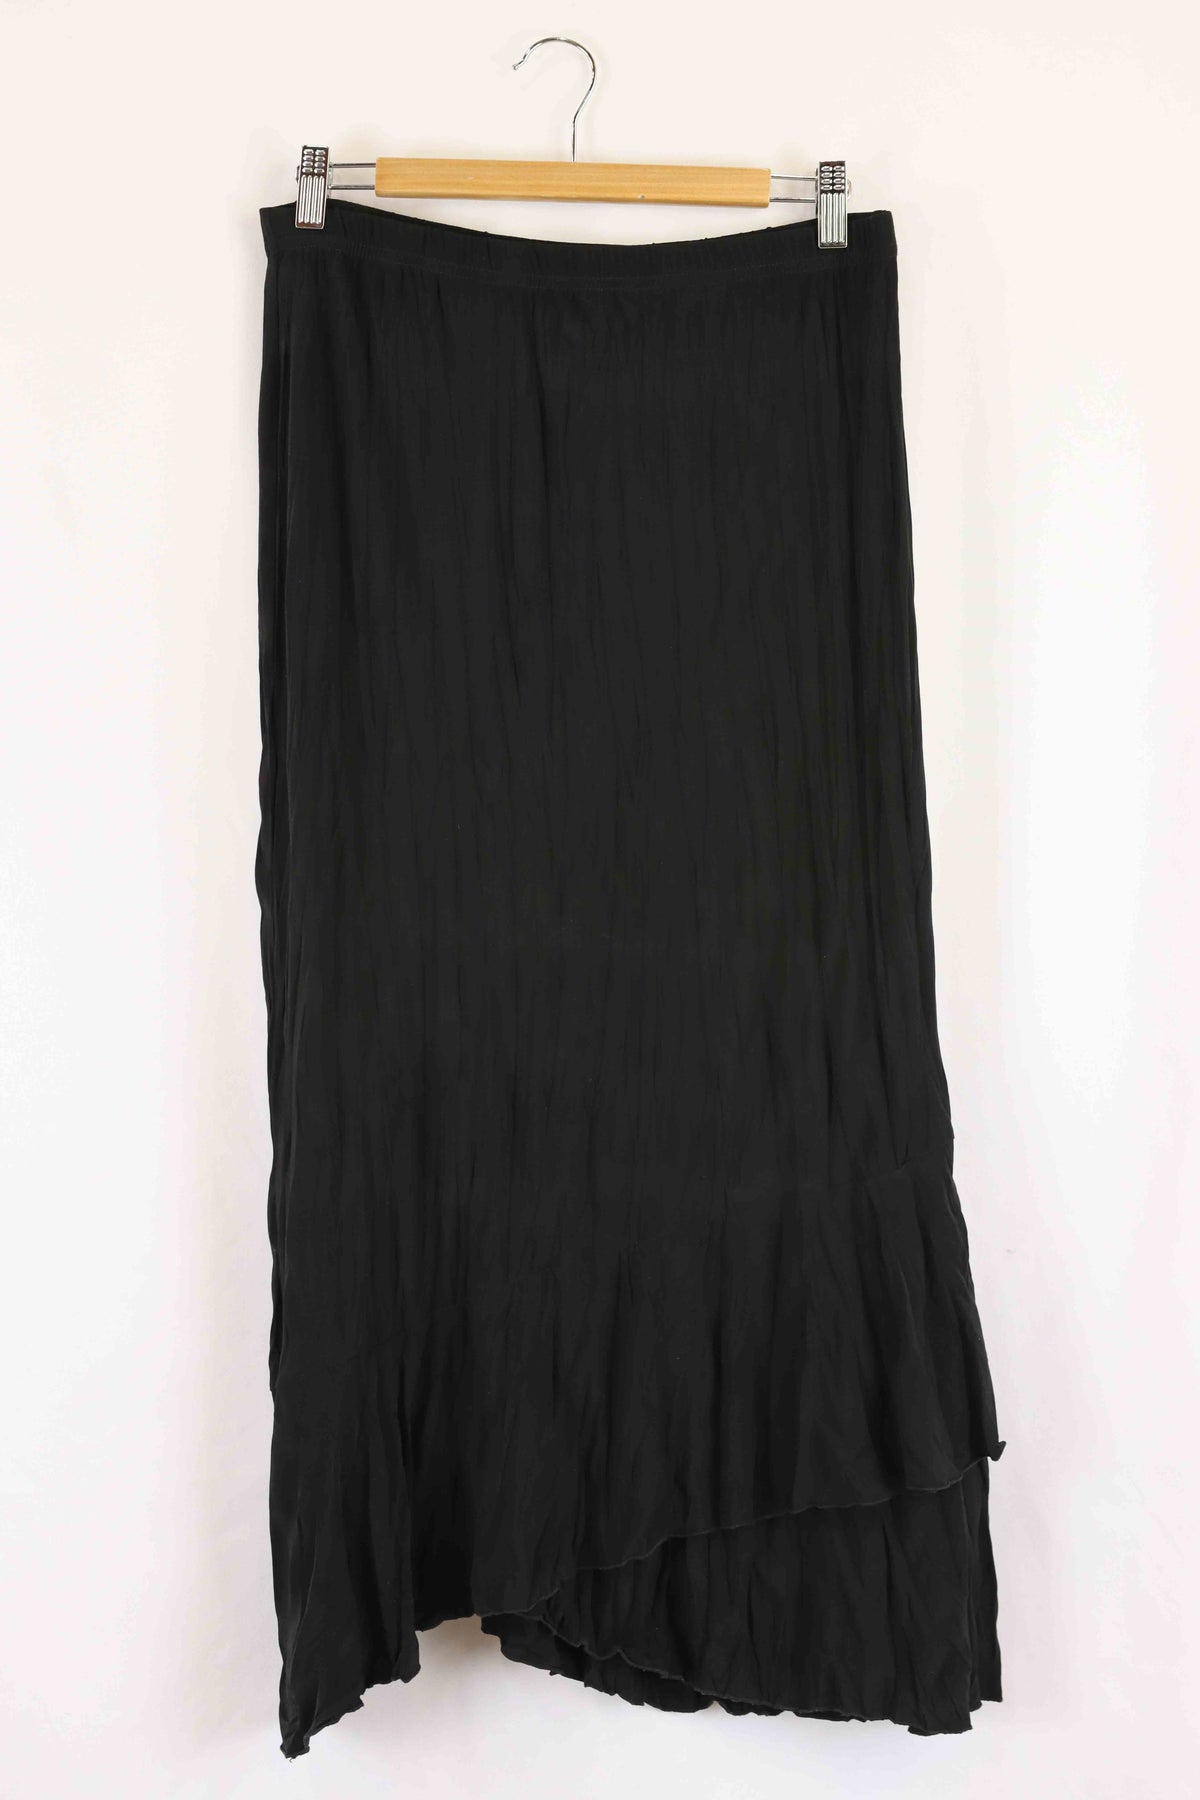 Motto Black Midi Skirt 12